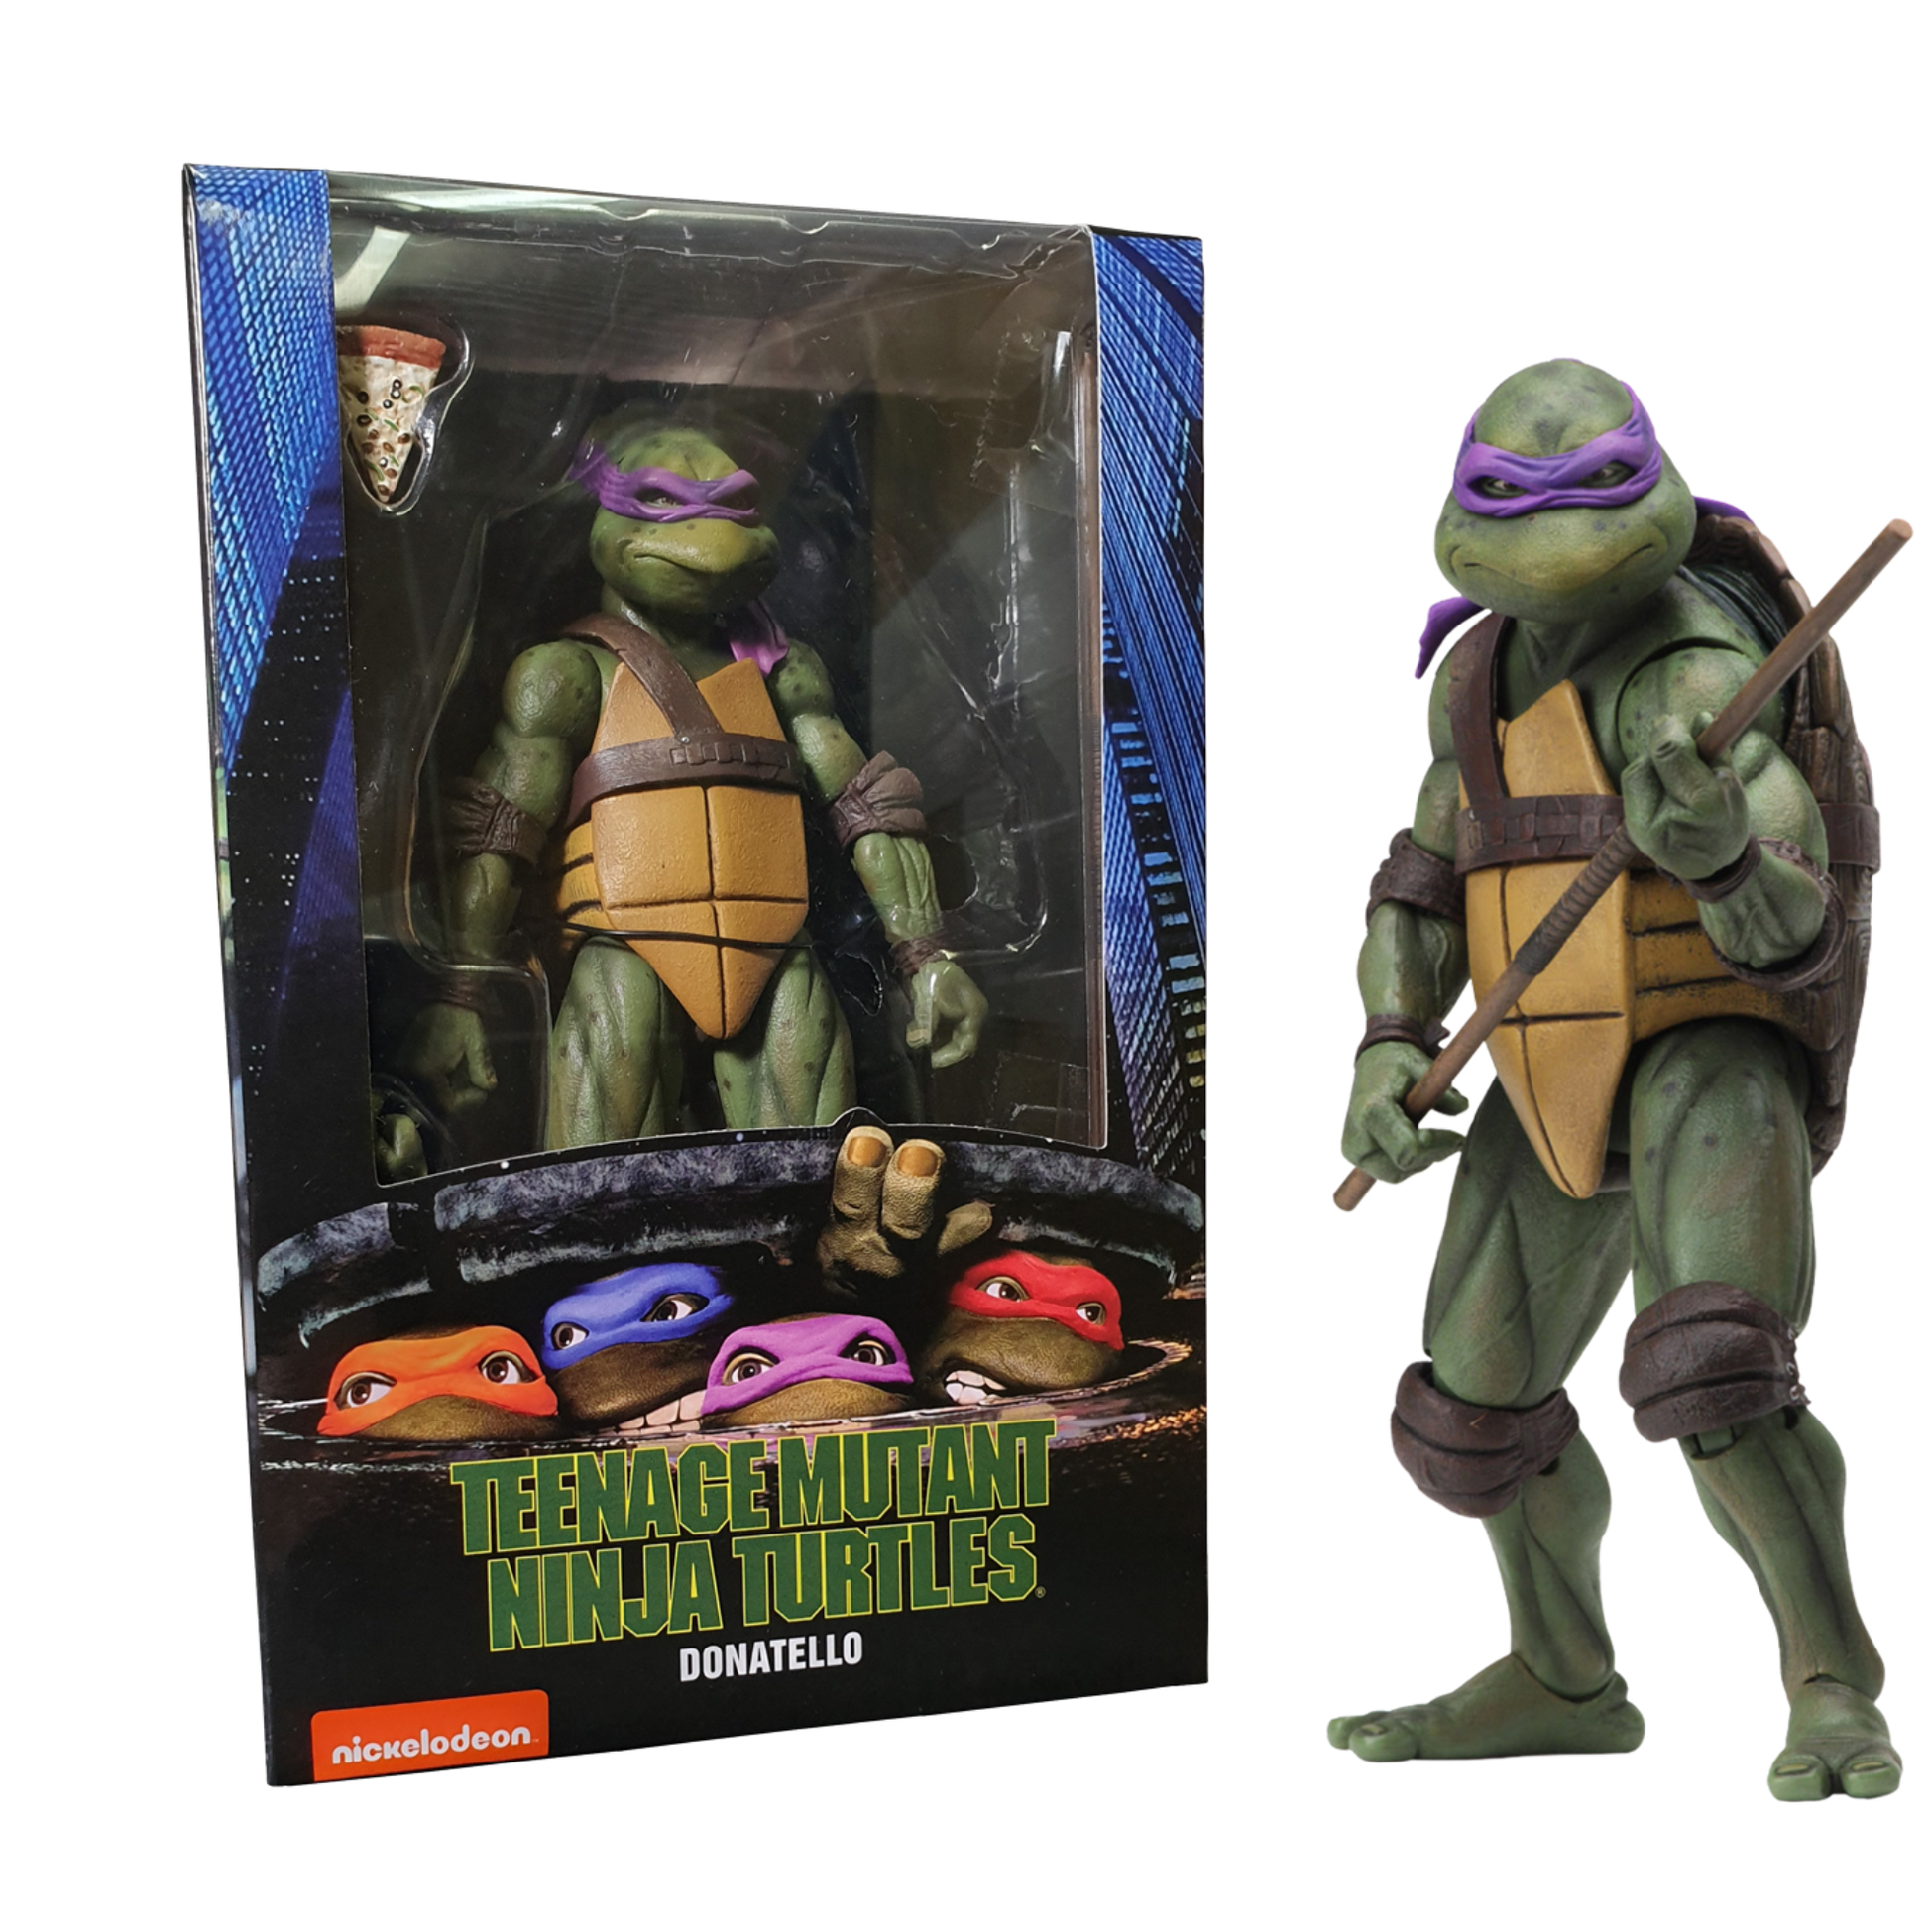 koolaz-ltd - NECA Teenage Mutant Ninja Turtles (1990) - Donatello 7” Action Figure - NECA - Figure